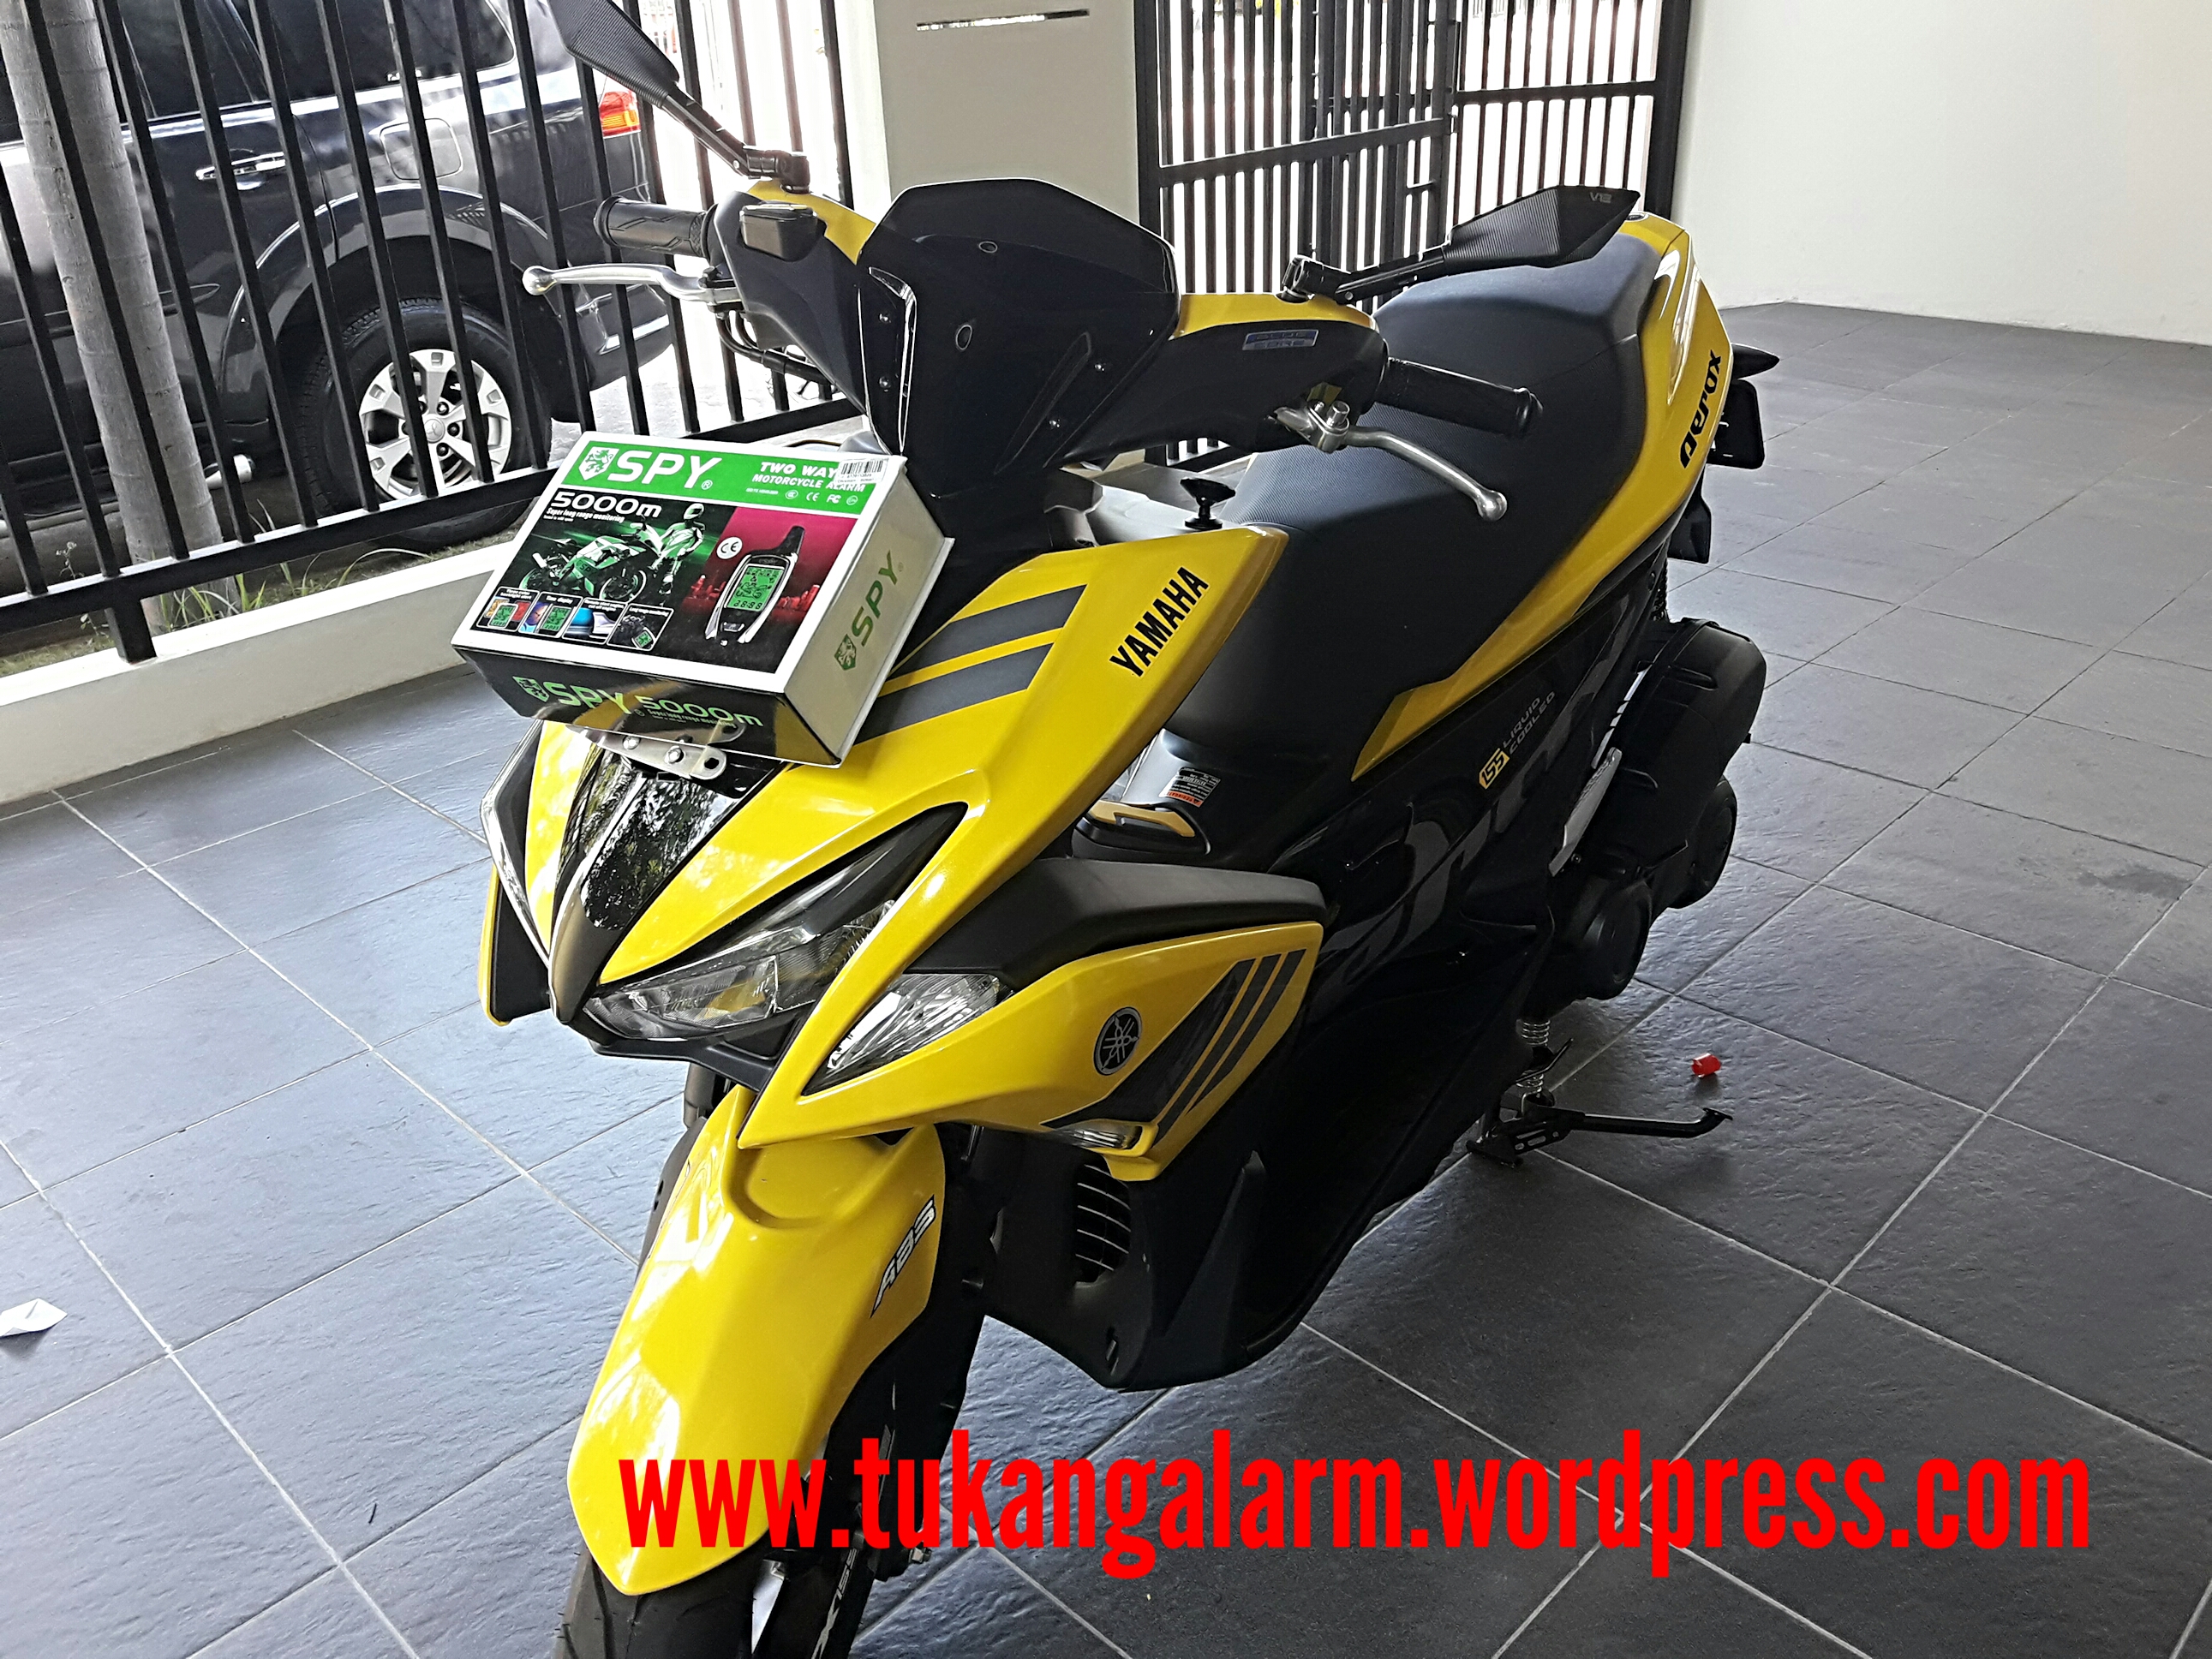  Harga  Motor  Yamaha  Aerox  155 Di  Jogja impremedia net